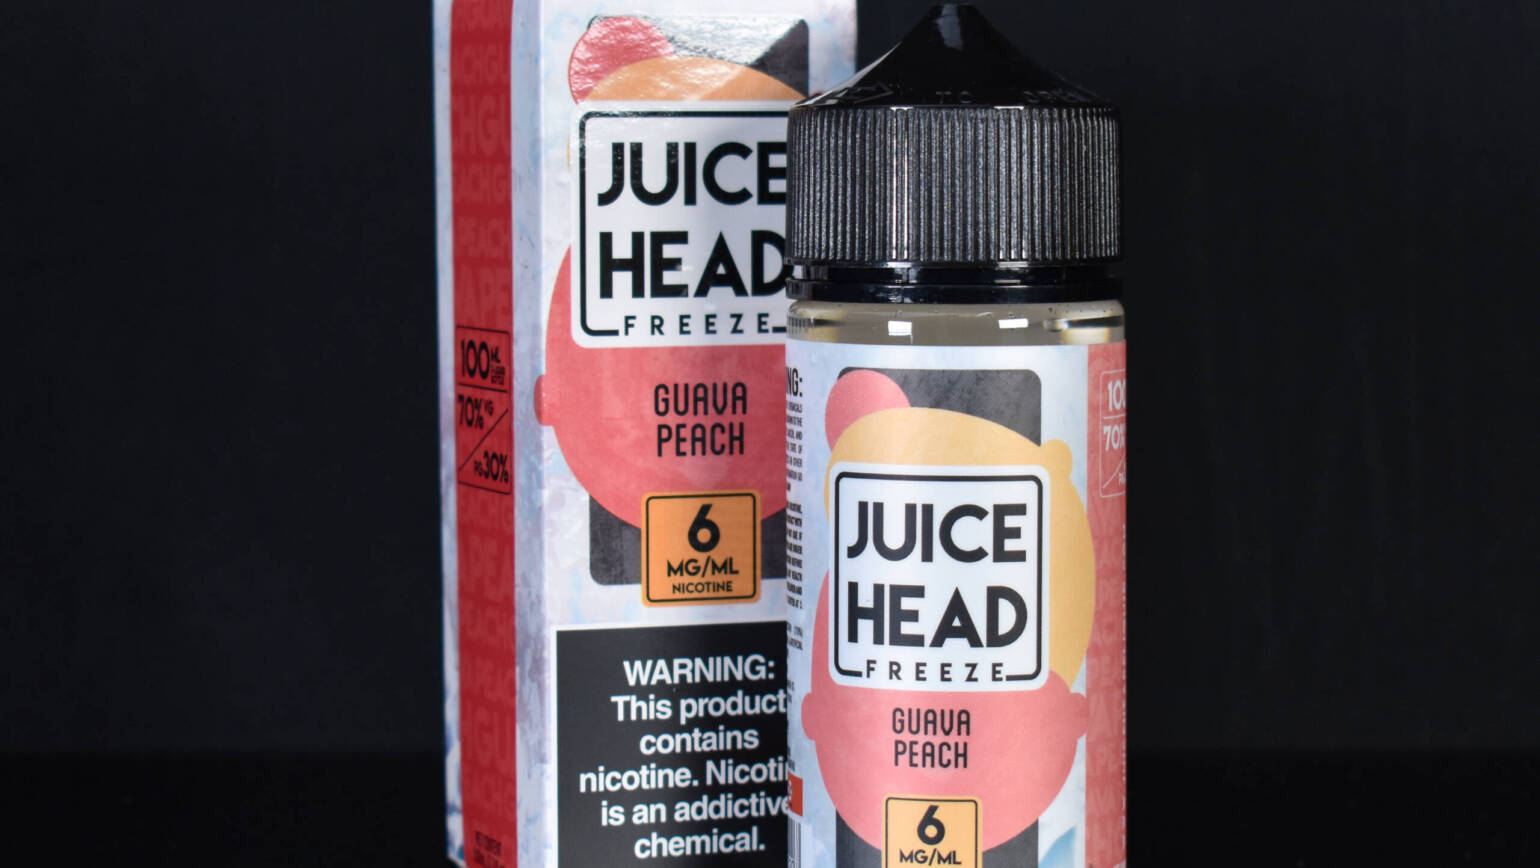 Juice Head – Guava Peach FREEZE